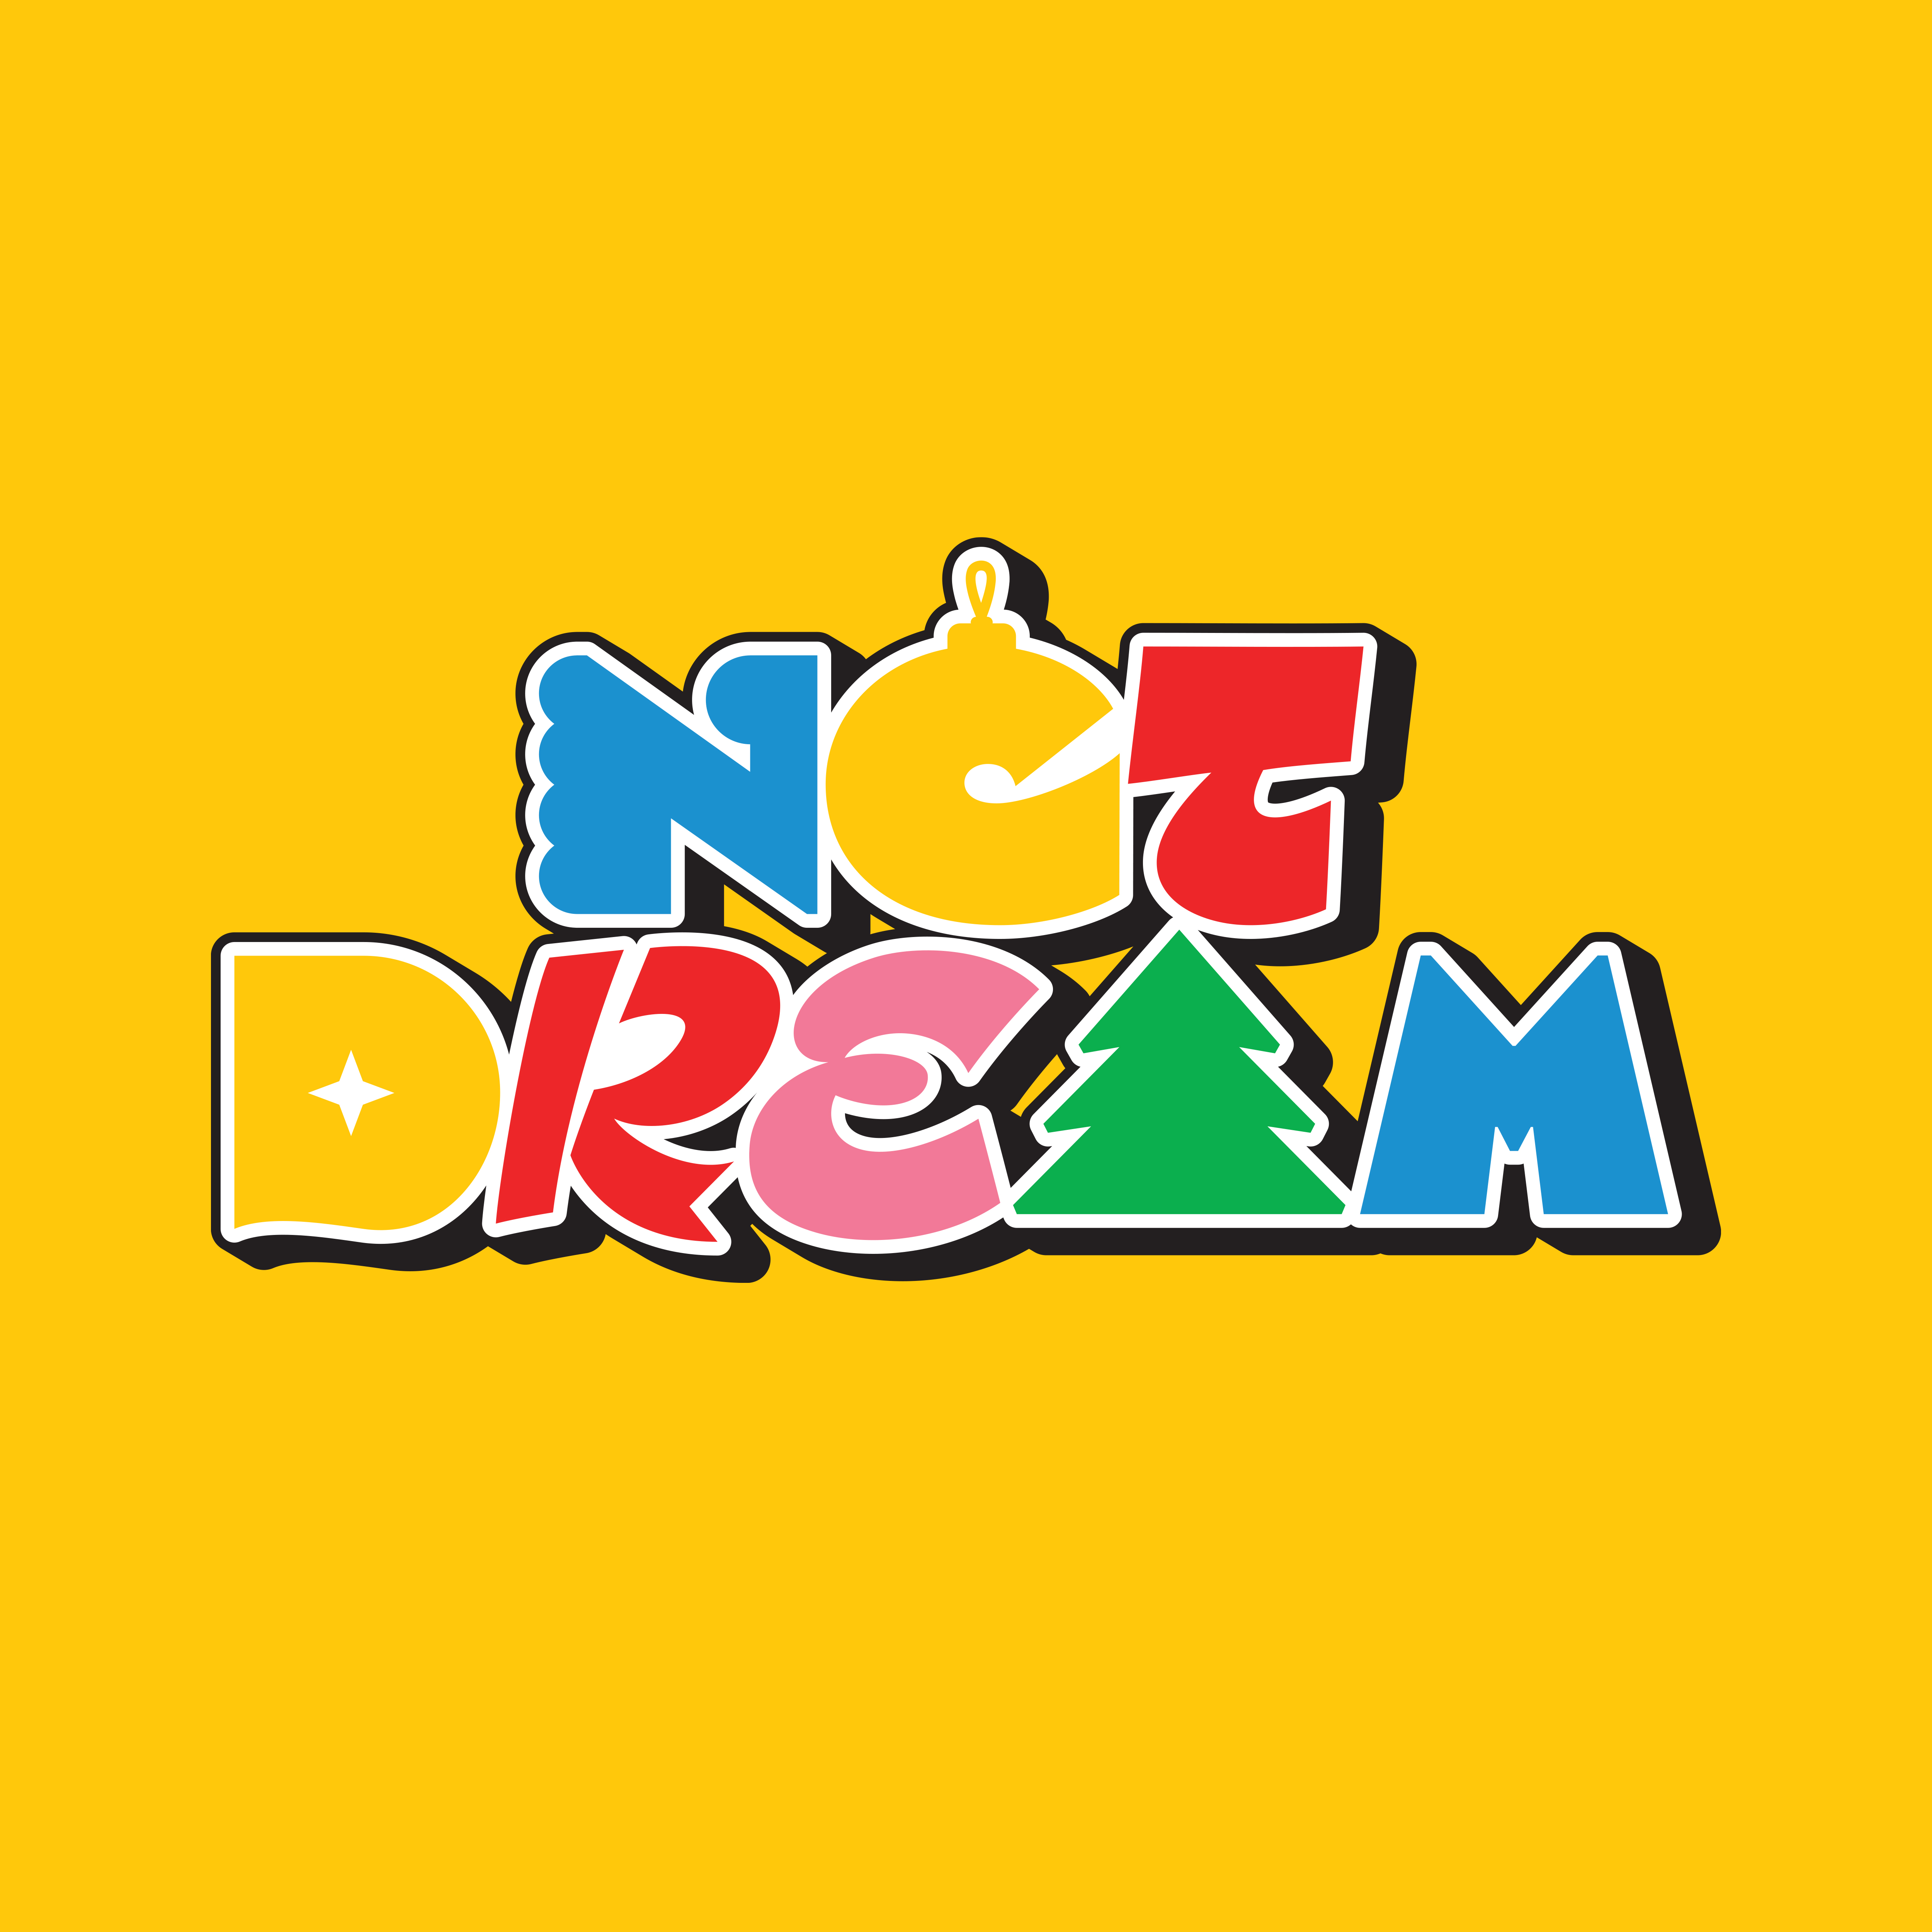 [拆卡专 第二批(截止到12.25早7点)] NCT DREAM - Winter Special Mini Album [Candy] (Special Ver.) (初回限量版)_朴志晟吧_ParkJiSungBar